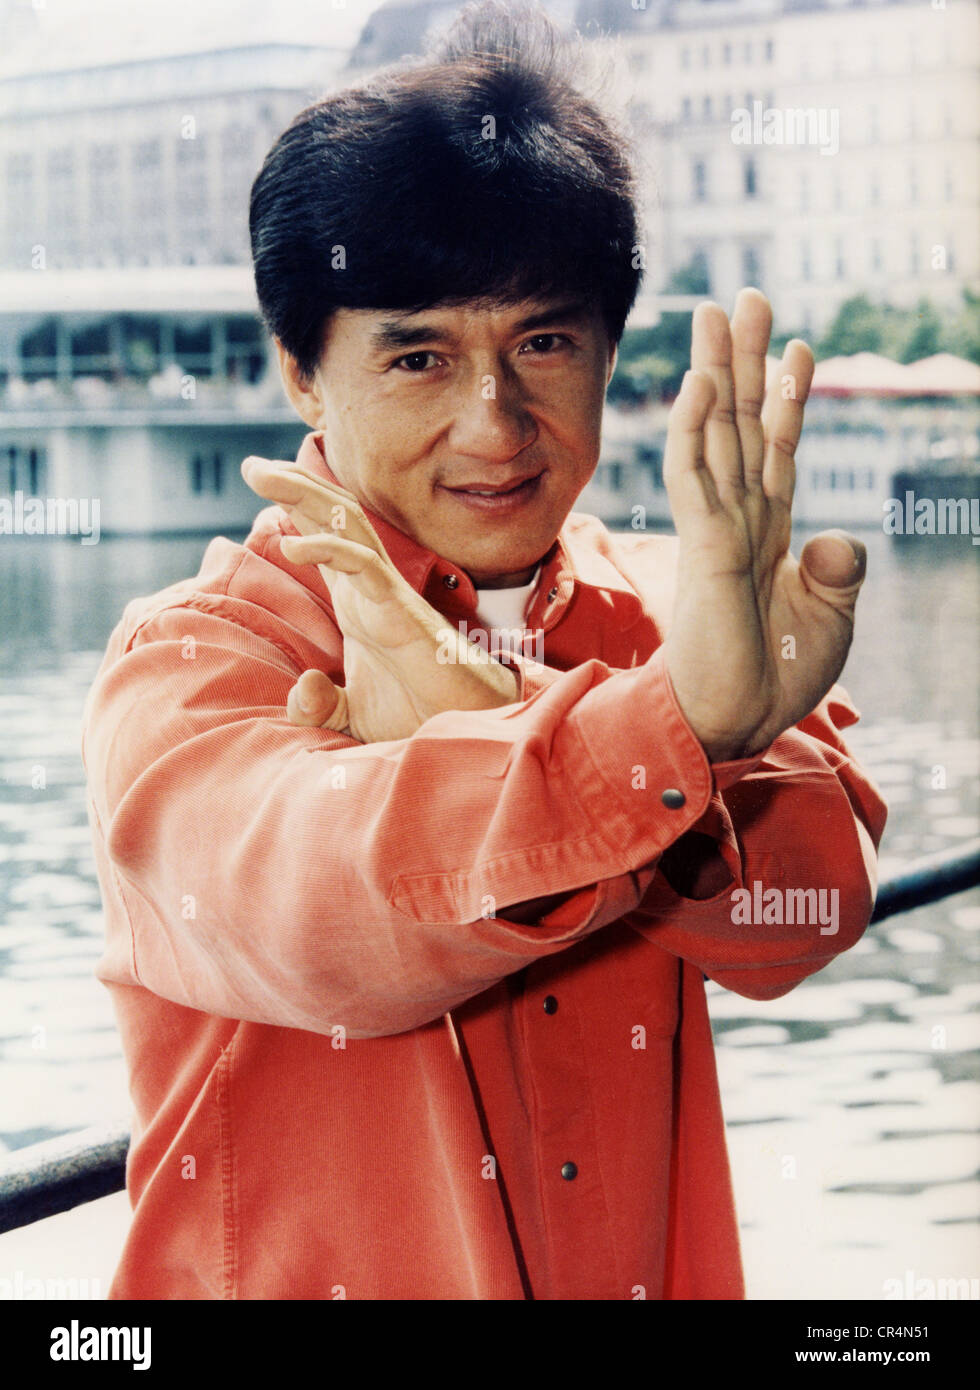 Chan, Jackie, * 7.4.1954, chinesischer Schauspieler, Porträt, in Kampfposition, während einer Promotionstour für seinen Film "Jackie Chans Erster Streik", Hamburg, Deutschland, Juli 1997, Stockfoto